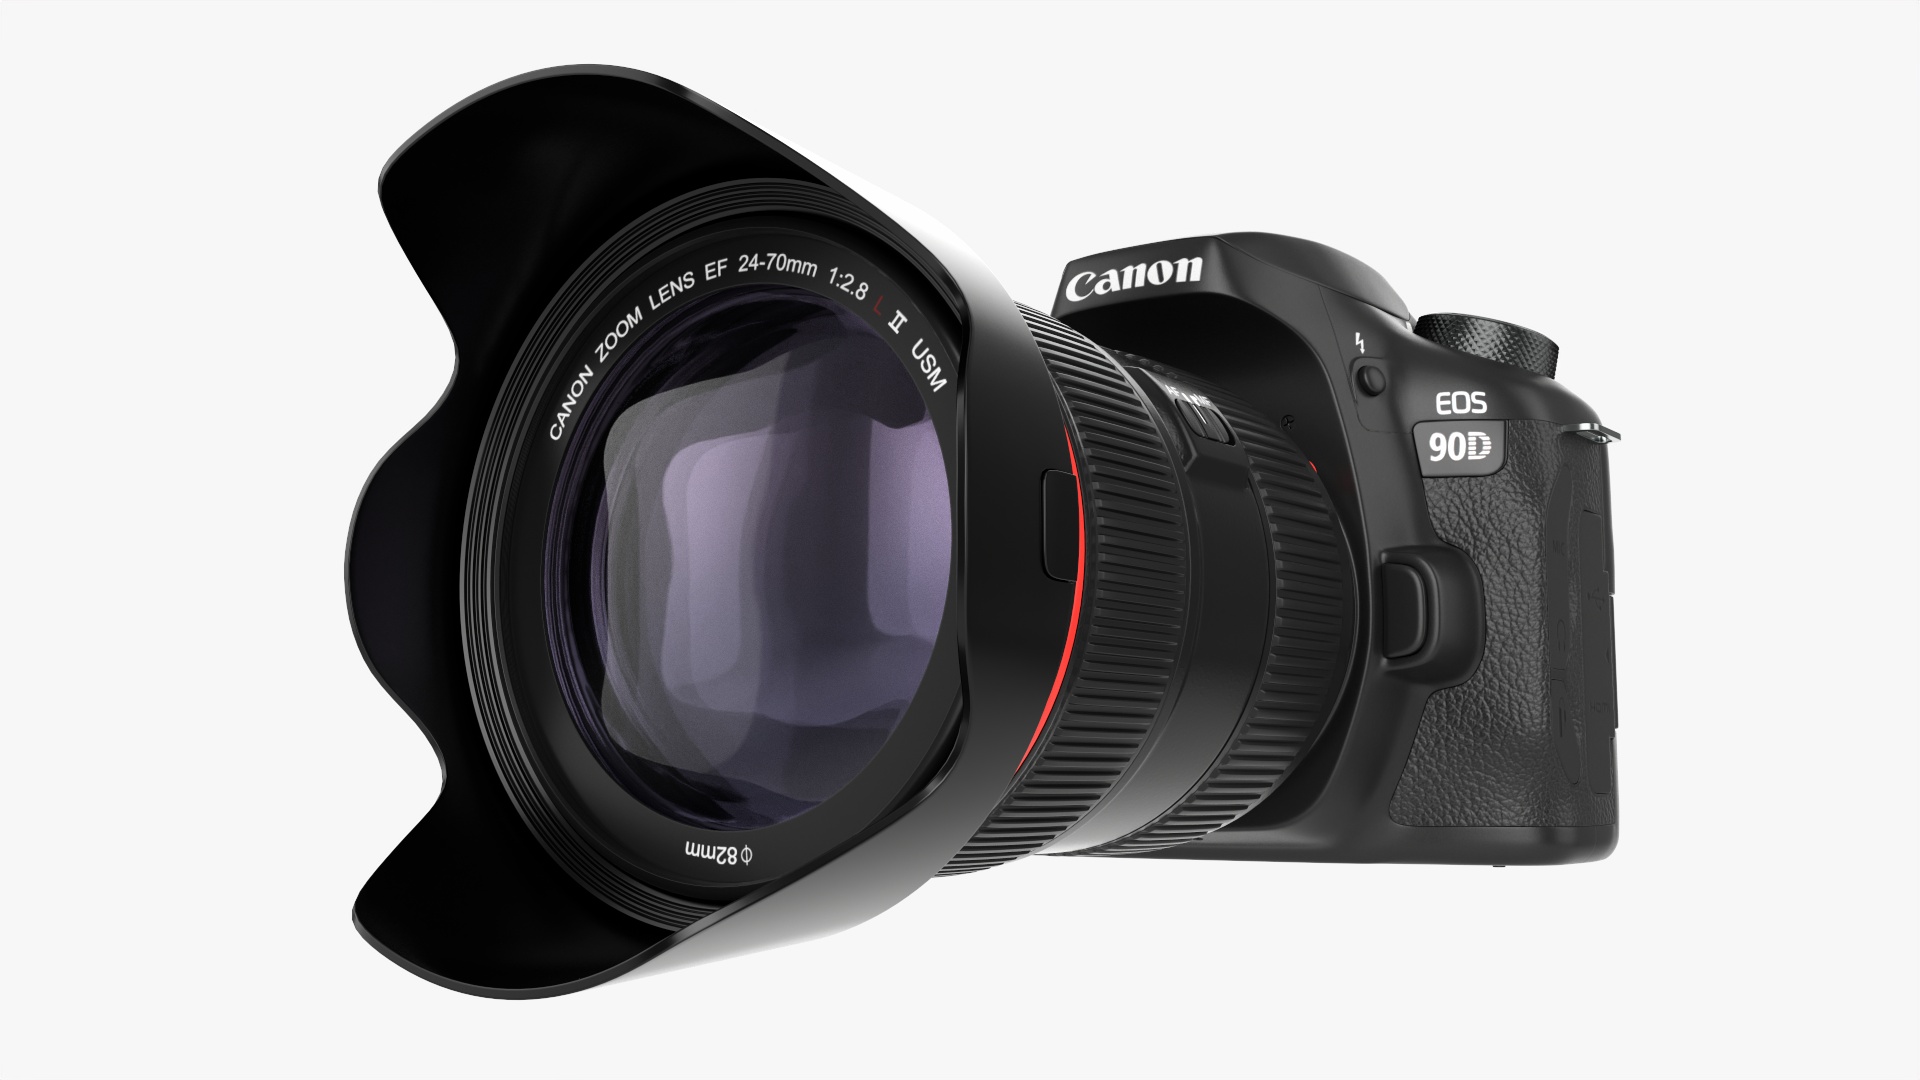 Canon EOS 90D DSLR camera